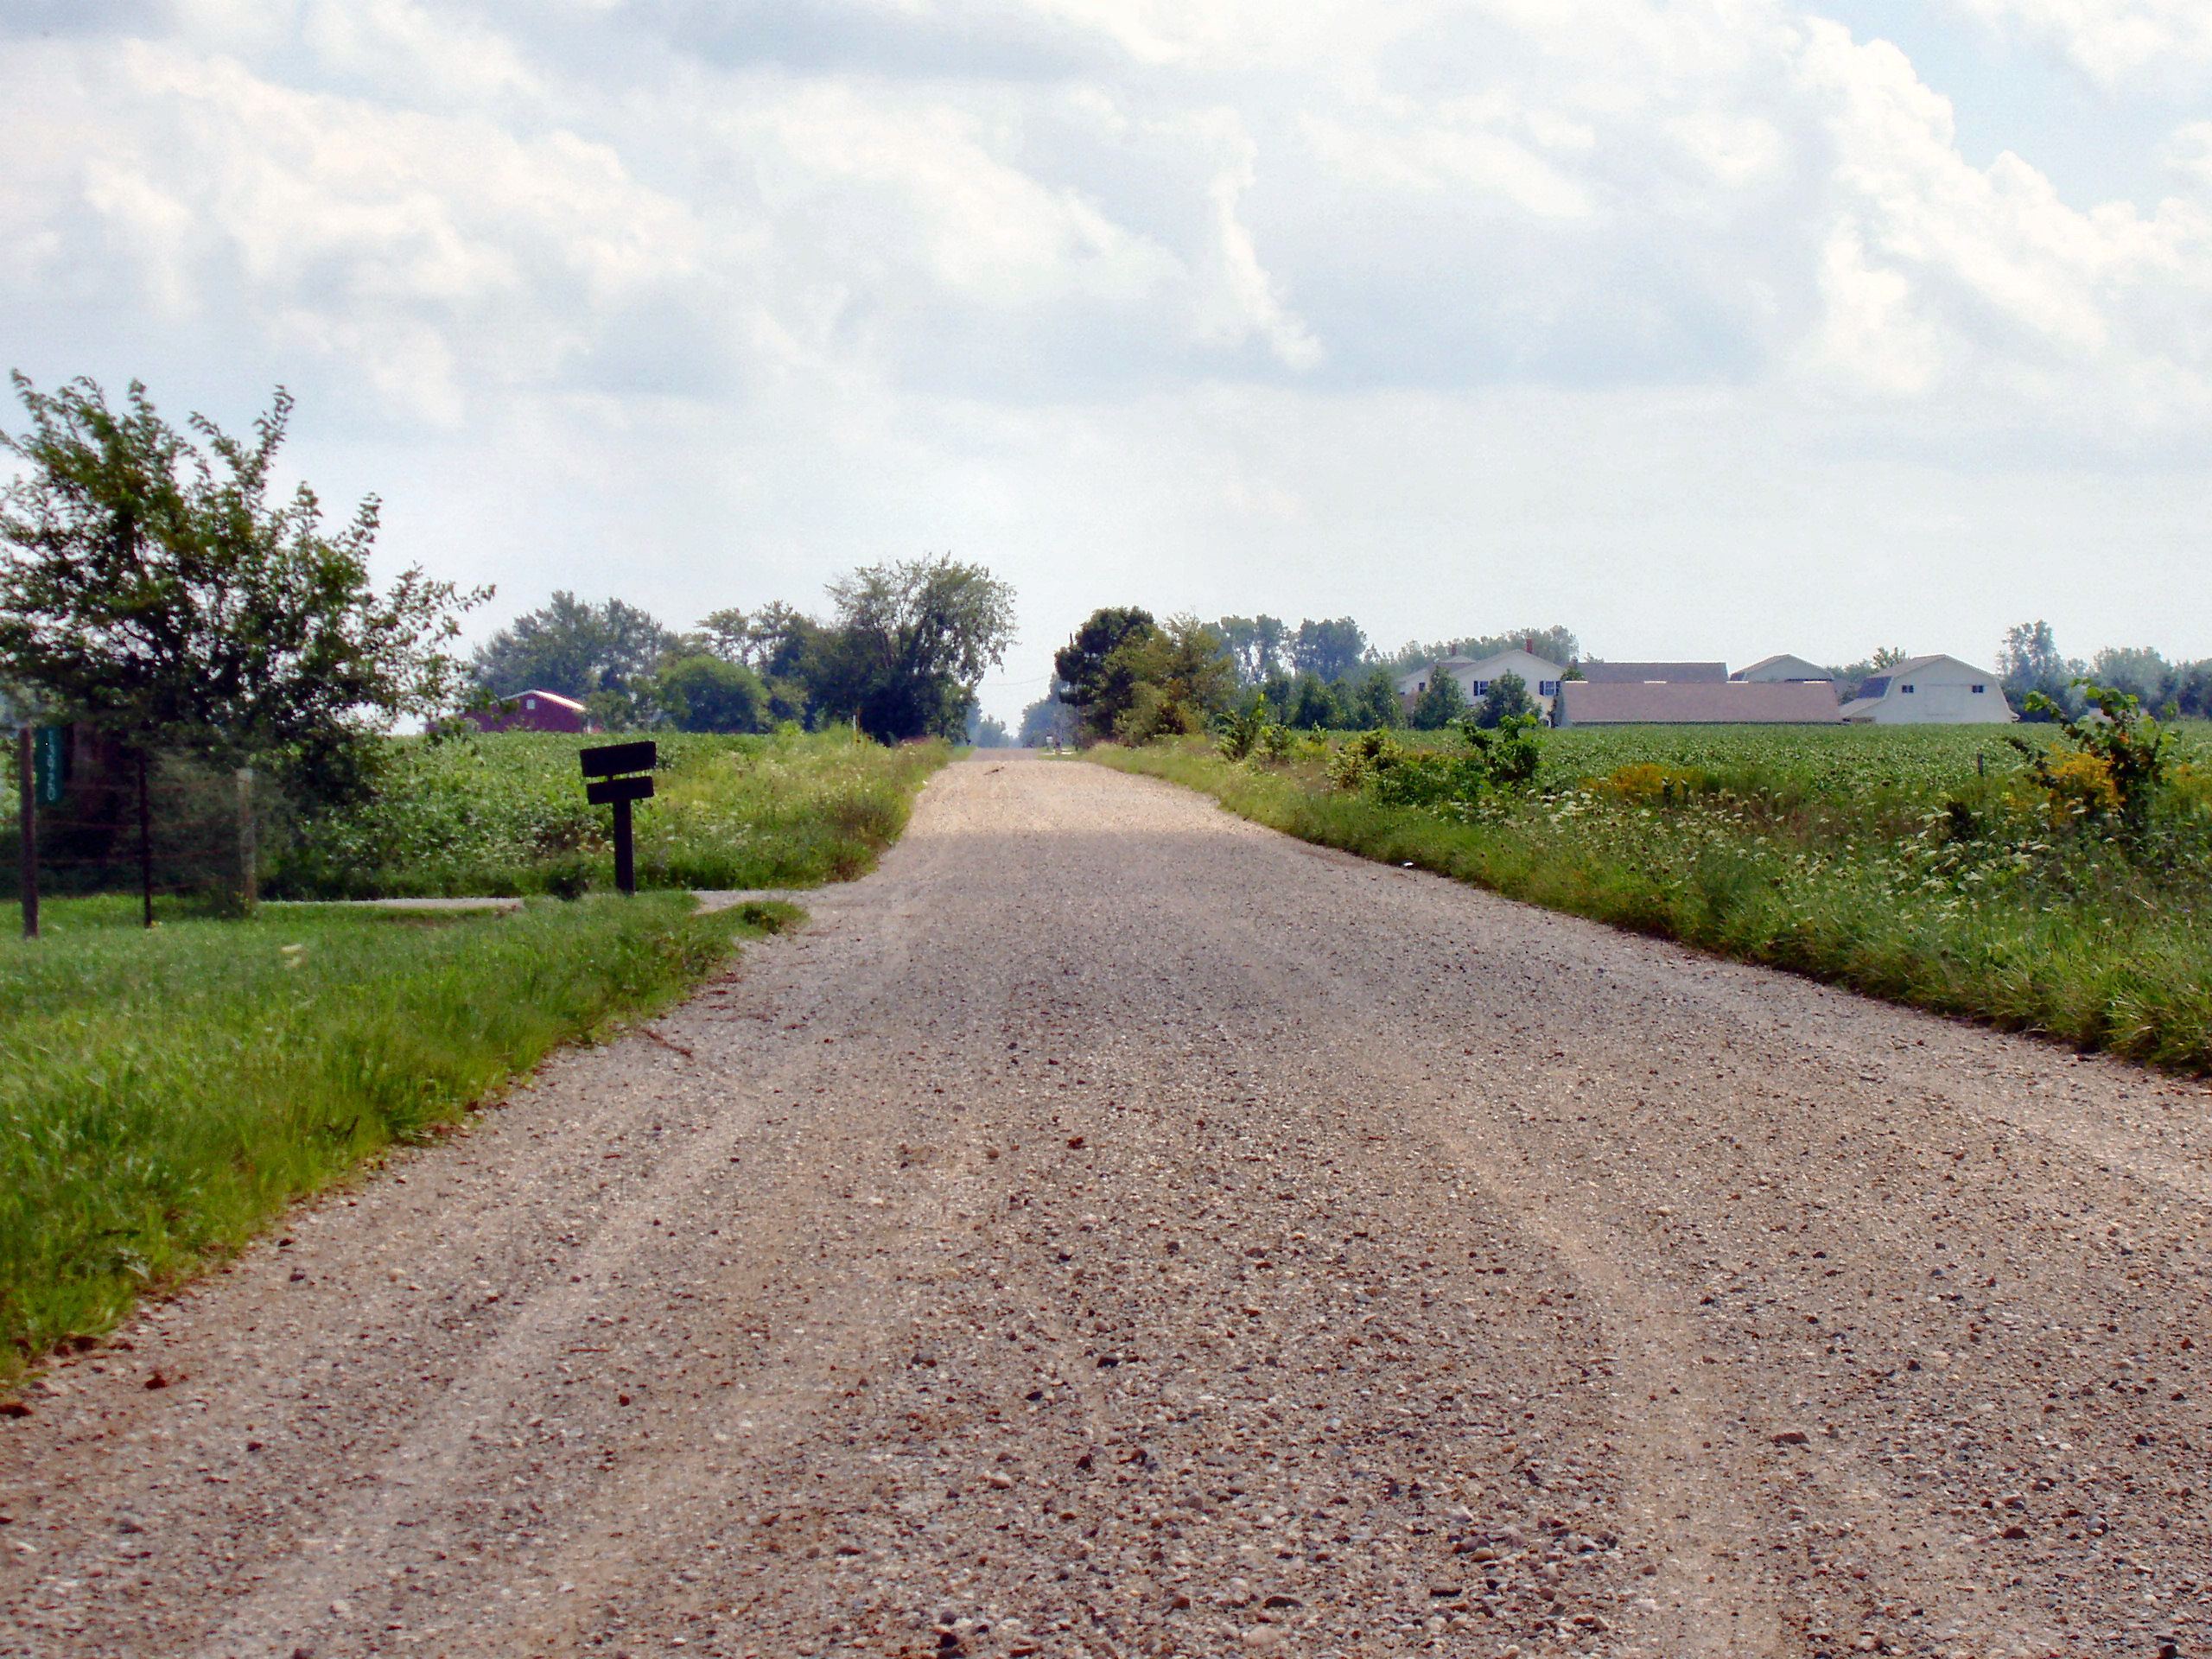 File:Indiana-rural-road-dirt.jpg